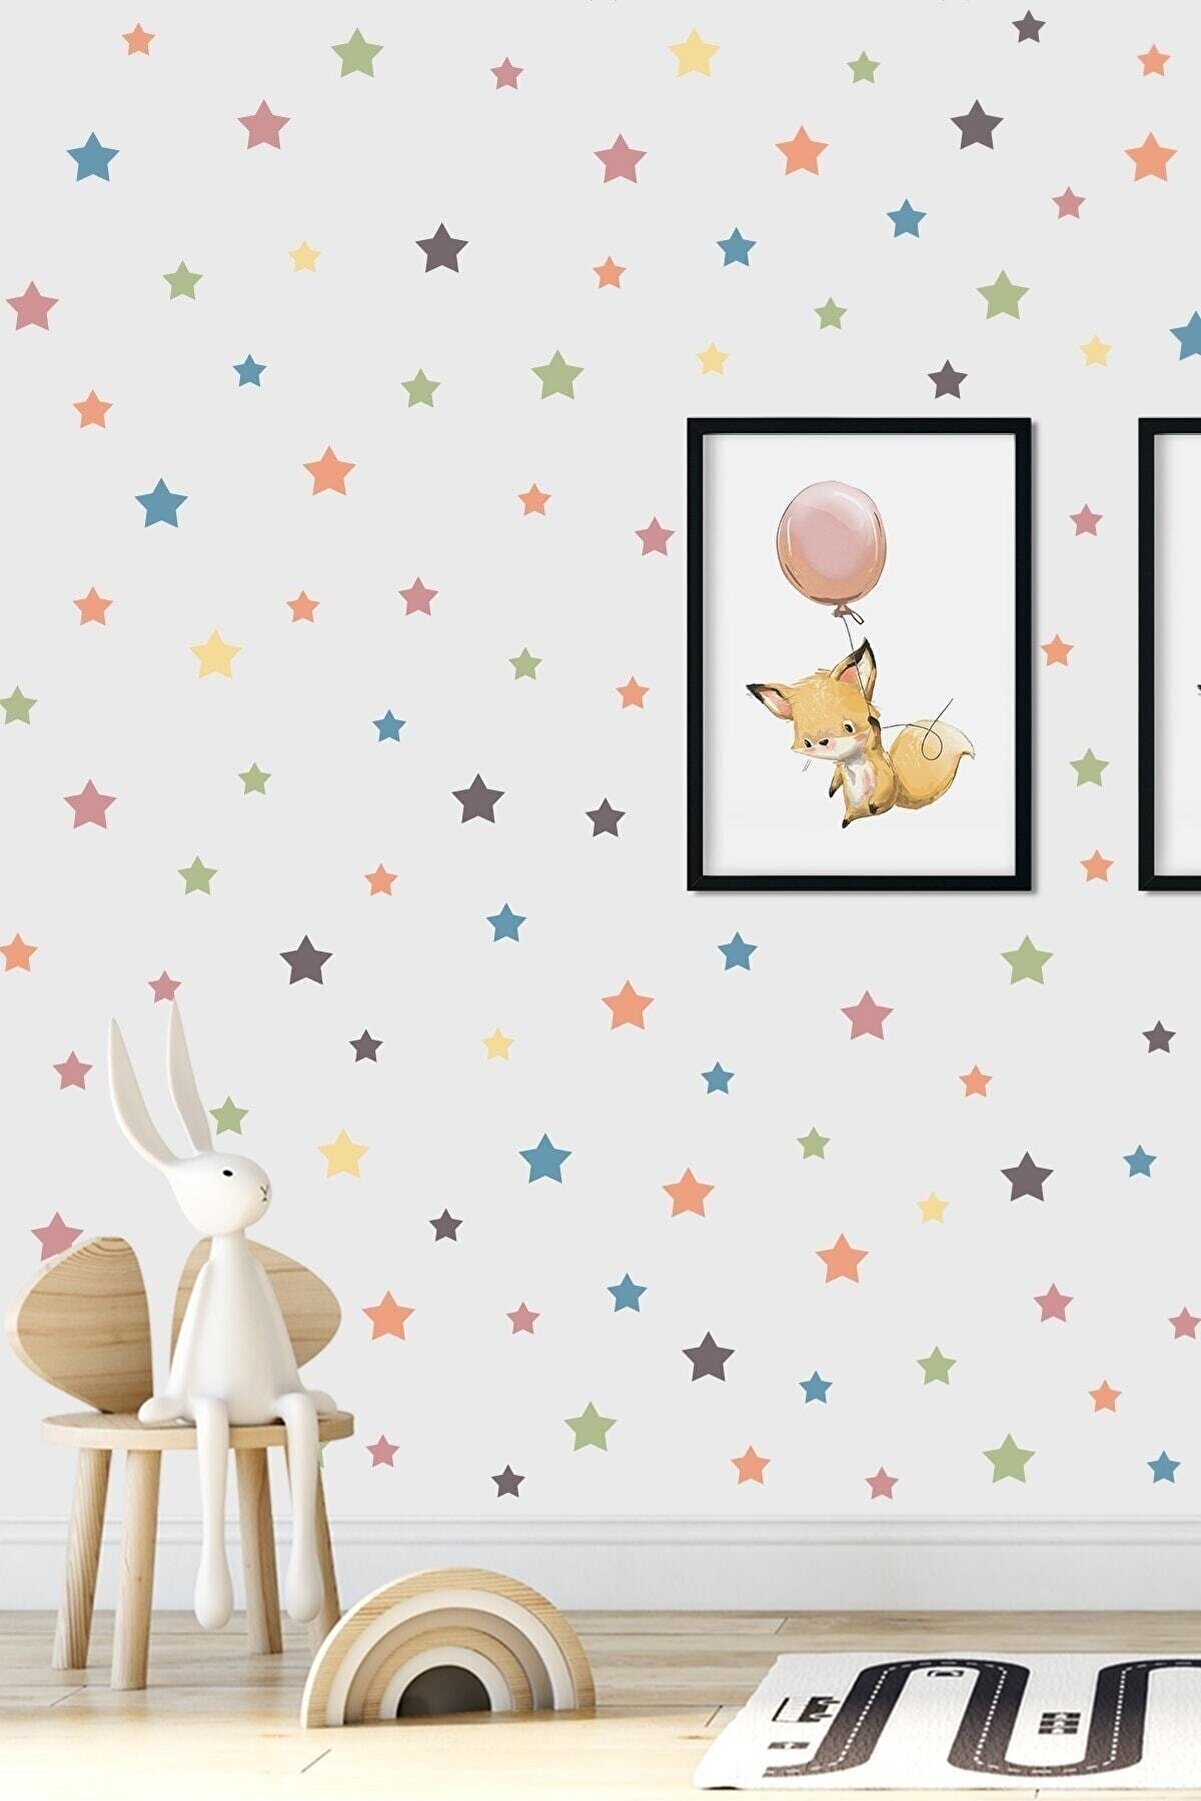 Moccoll Duvar Sticker 100 Adet Renkli Yıldızlar Duvar Etiketi